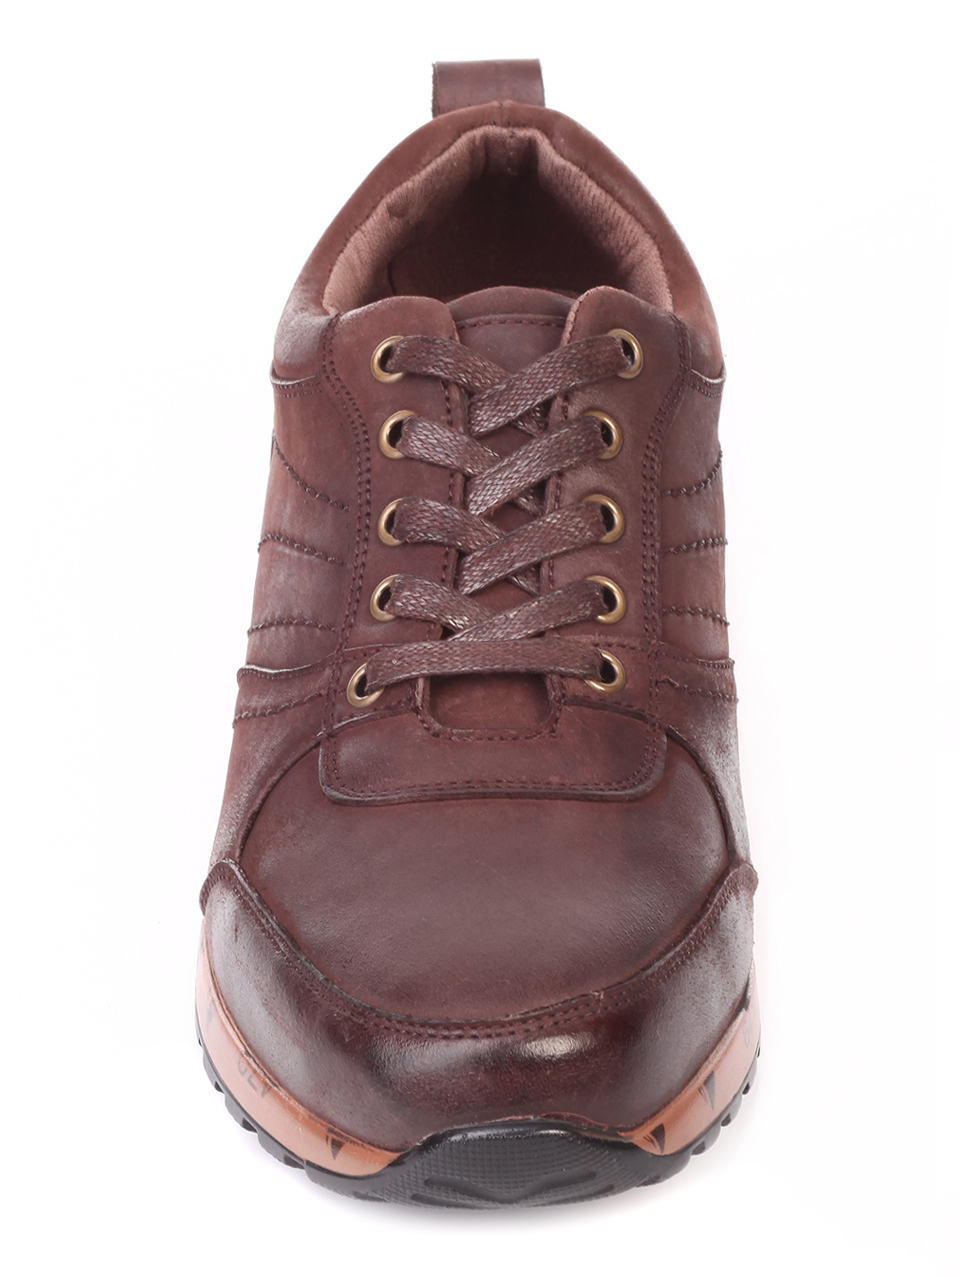 Ежедневни мъжки обувки от естествена кожа 7X-19725 coffee